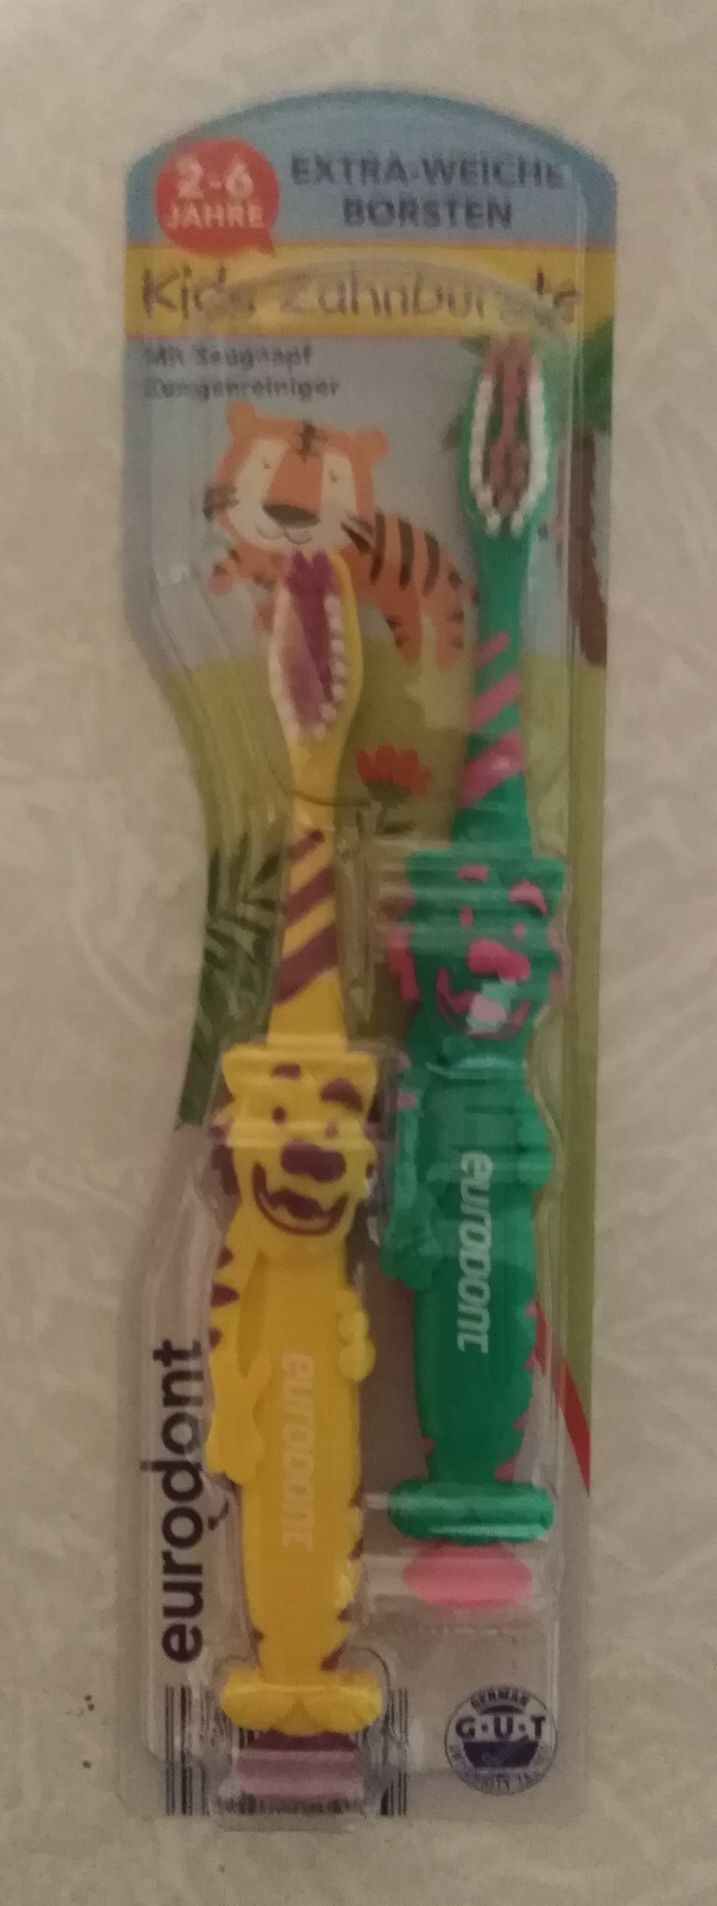 Зубная щётка для детей Eurodontt